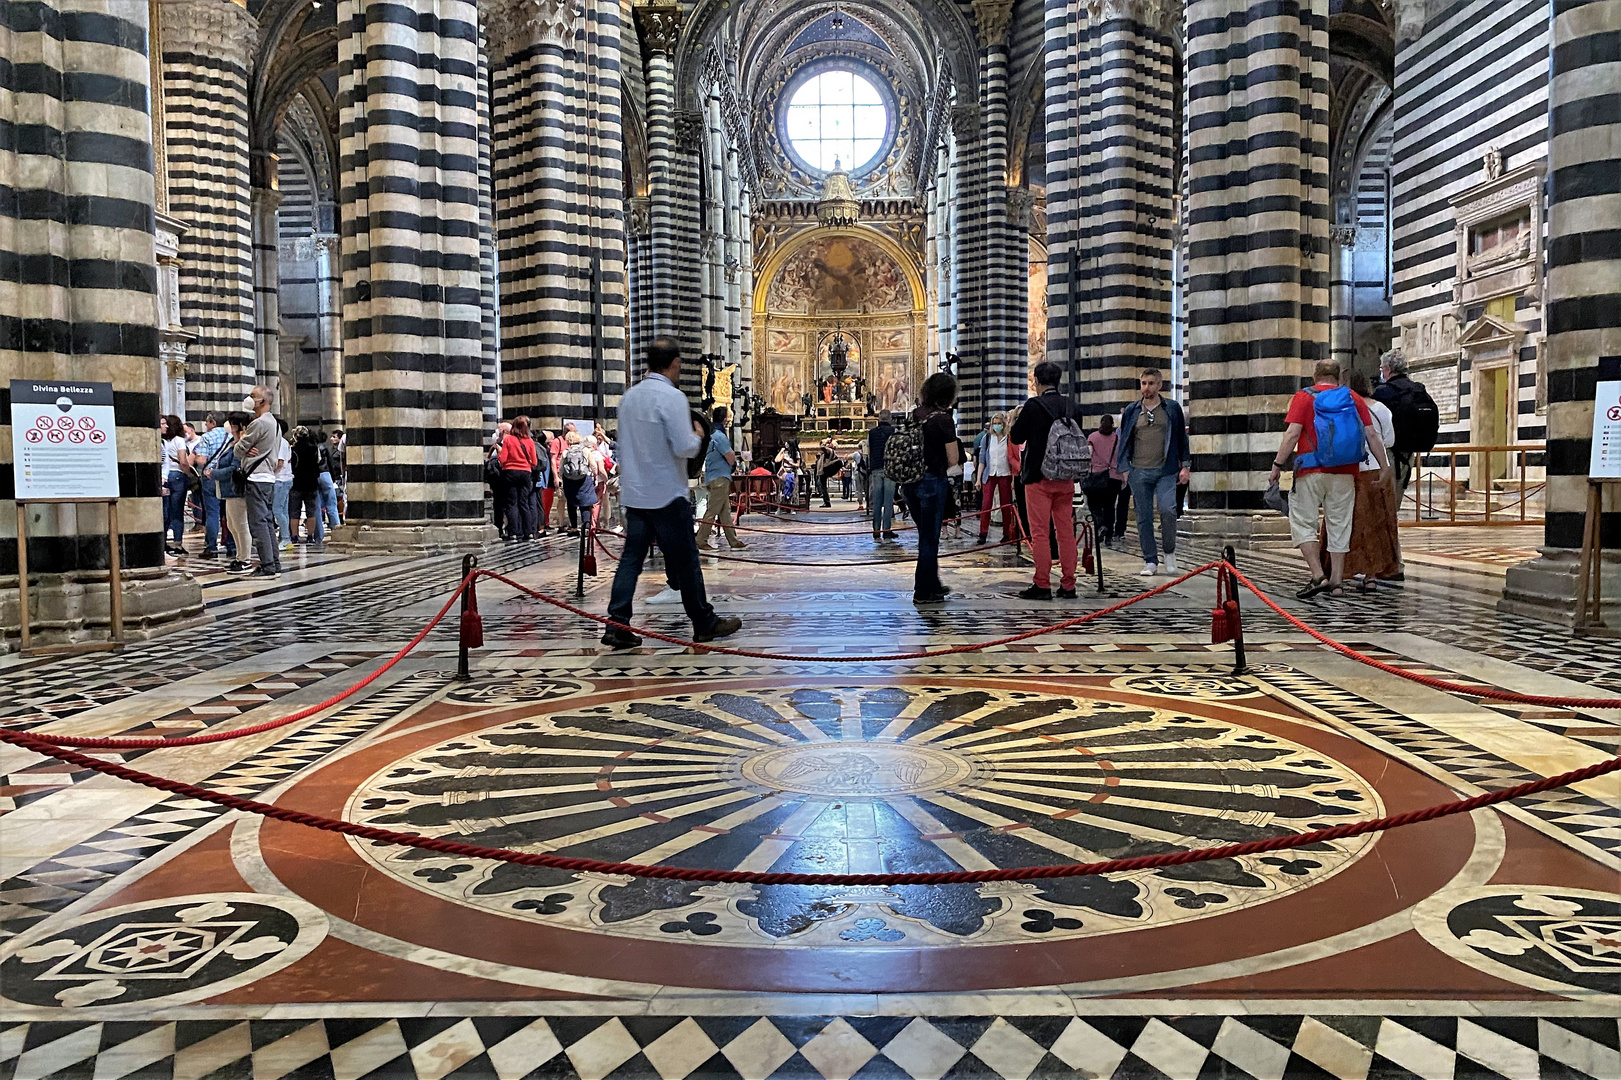 Fussbodenkunst im Dom von Siena